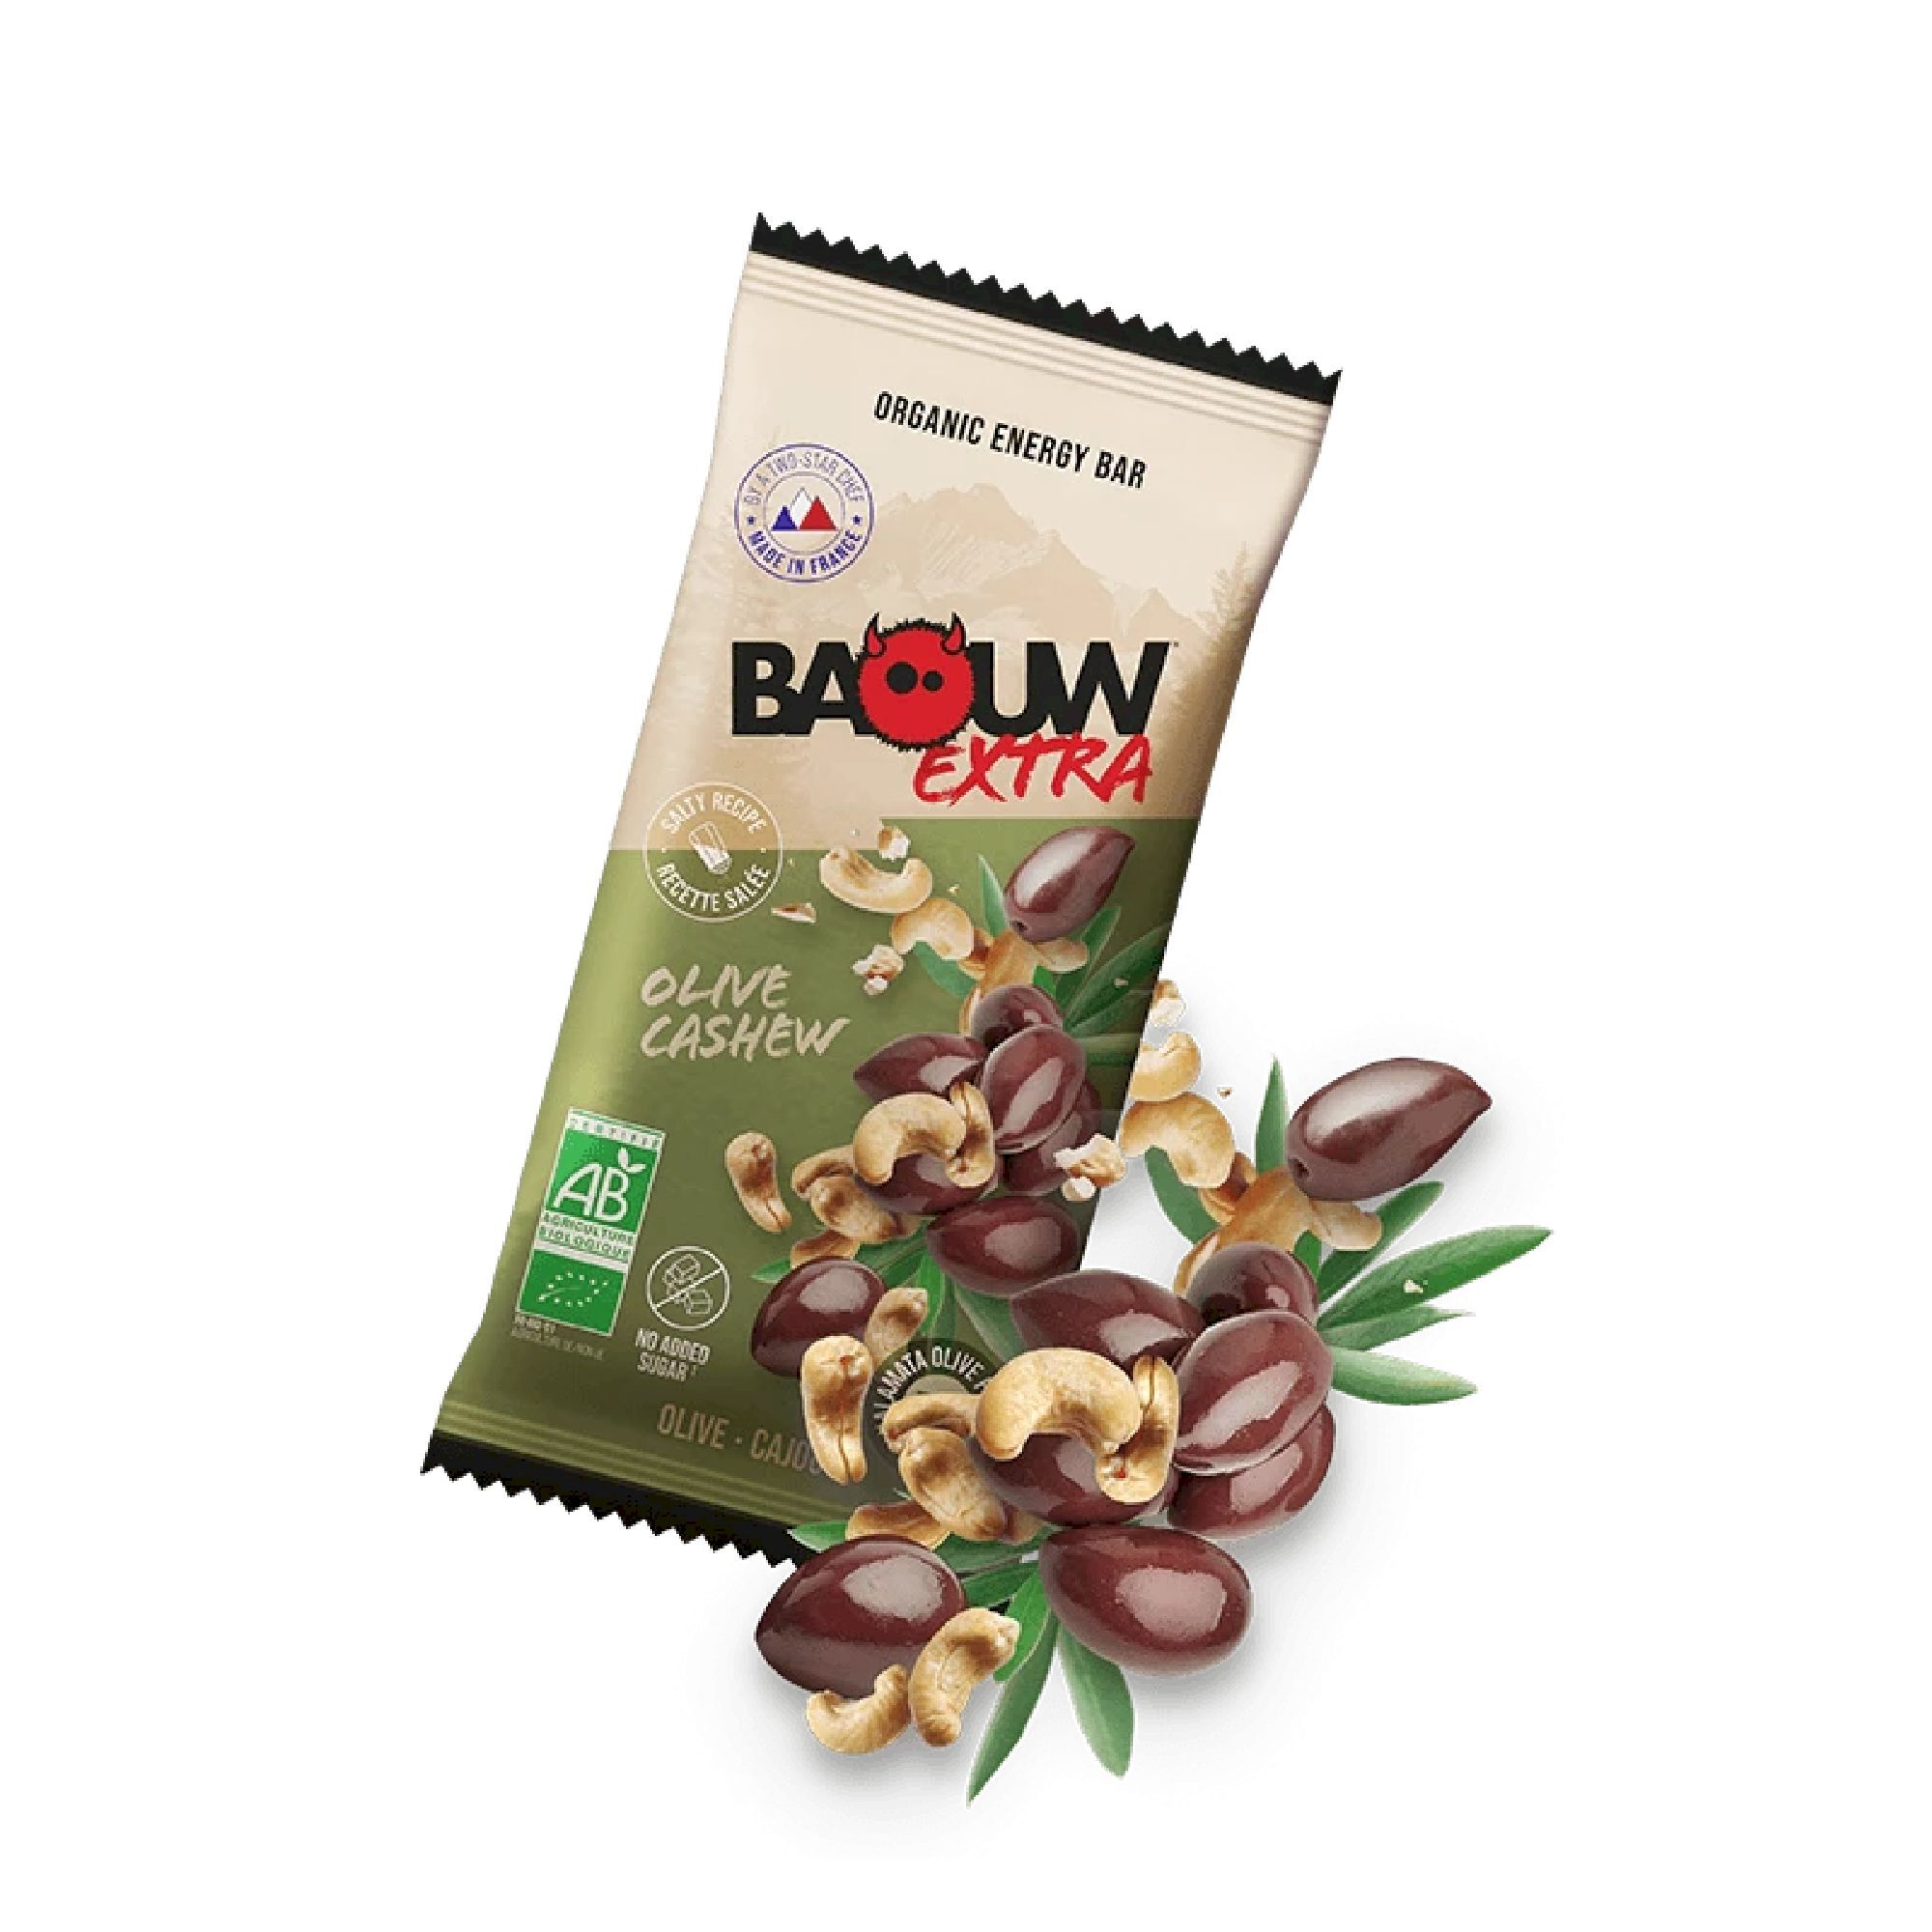 Baouw Extra Olive-Cajou - Baton energetyczny | Hardloop